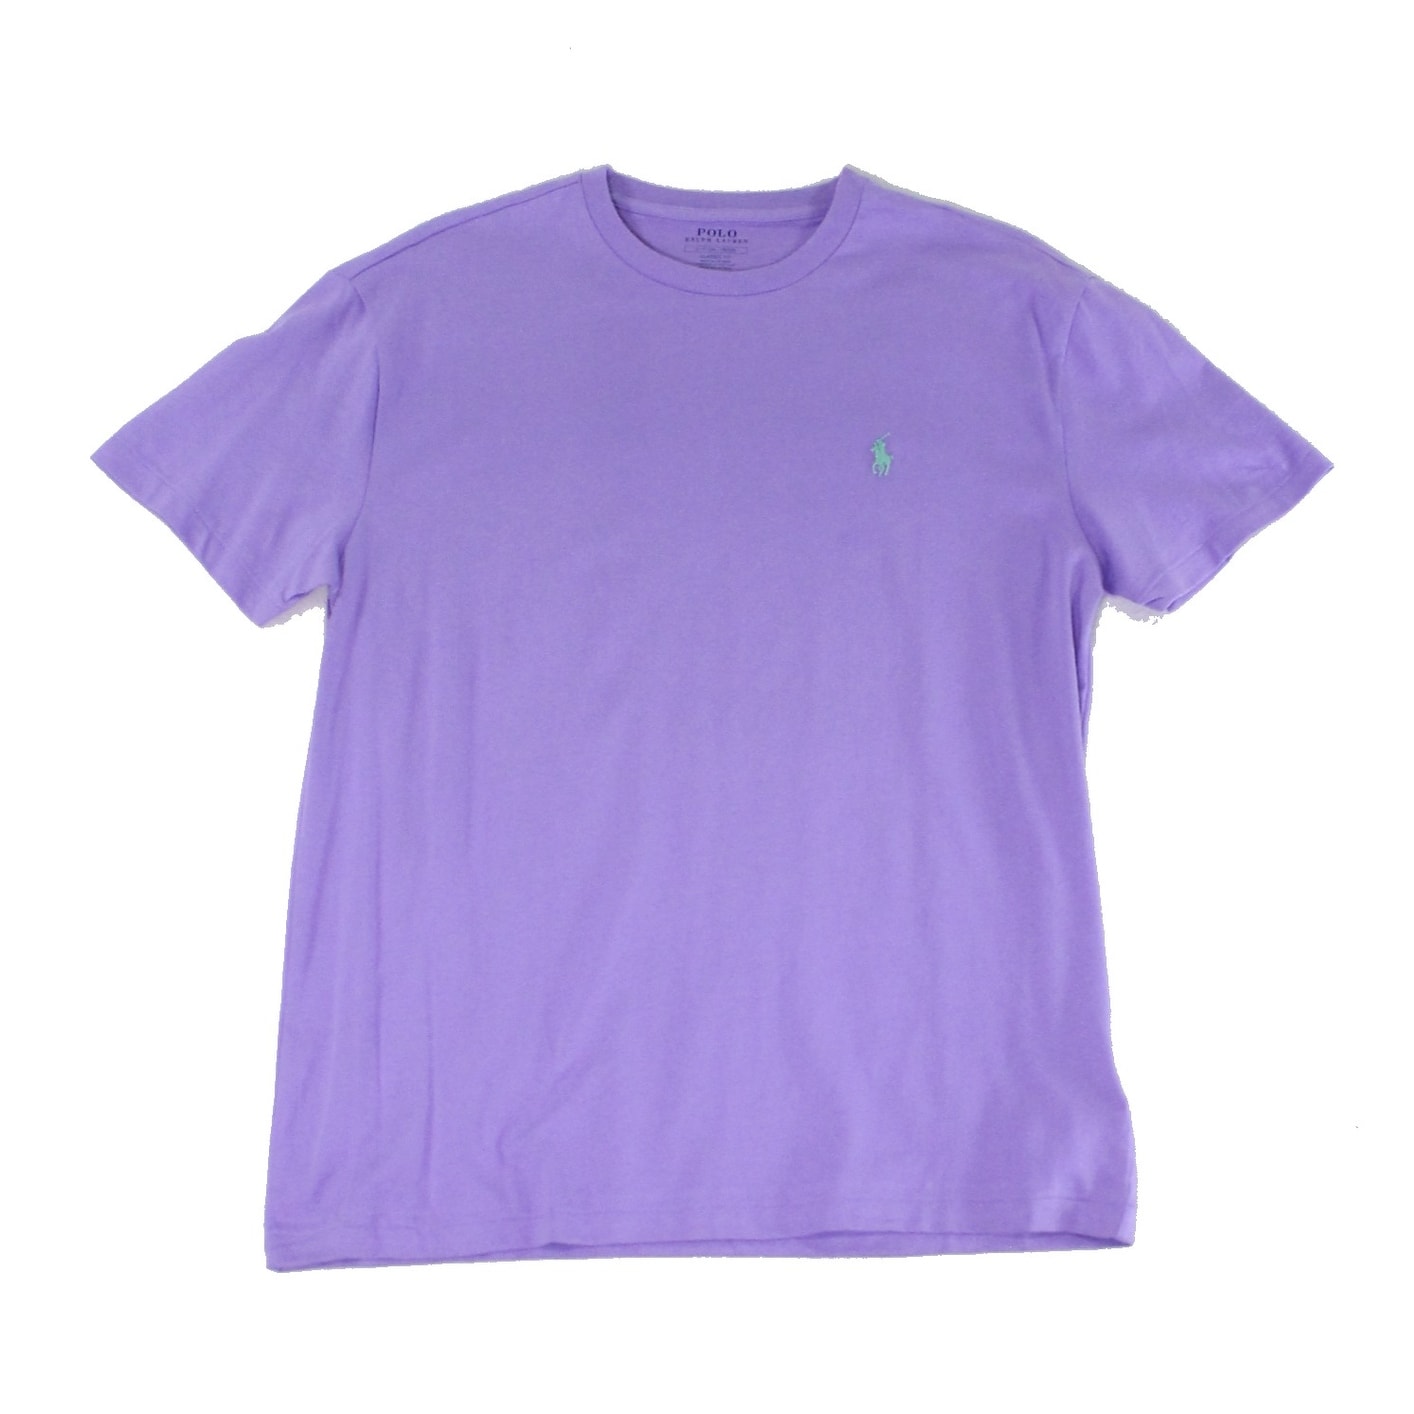 purple polo ralph lauren shirt